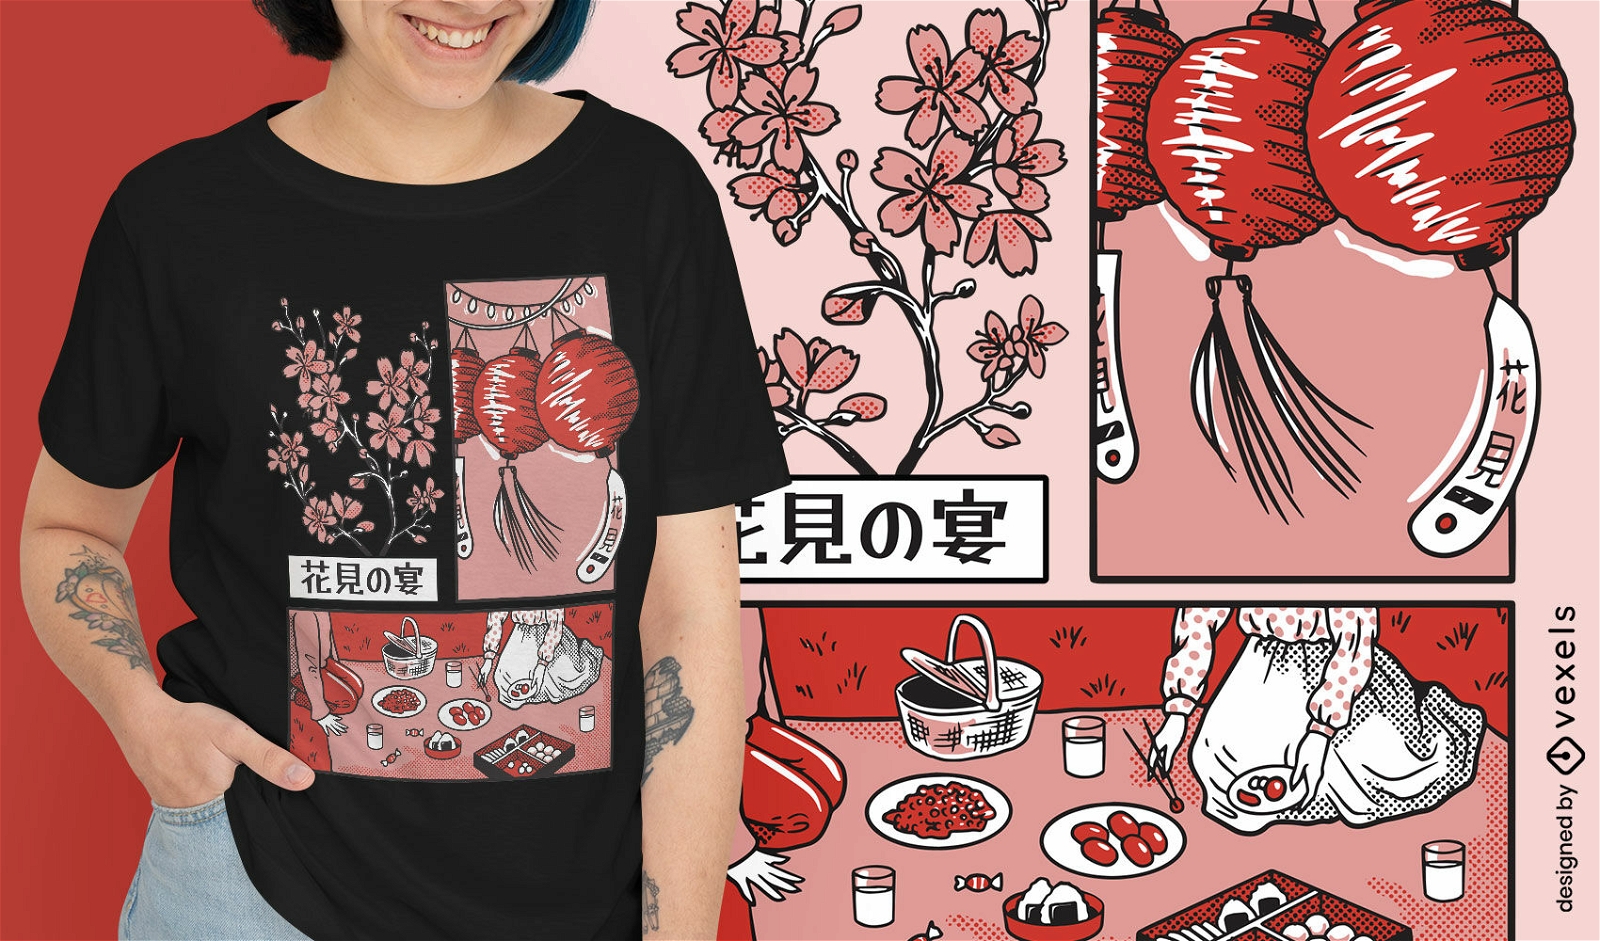 Dise?o de camiseta de picnic de flor de cerezo japon?s.